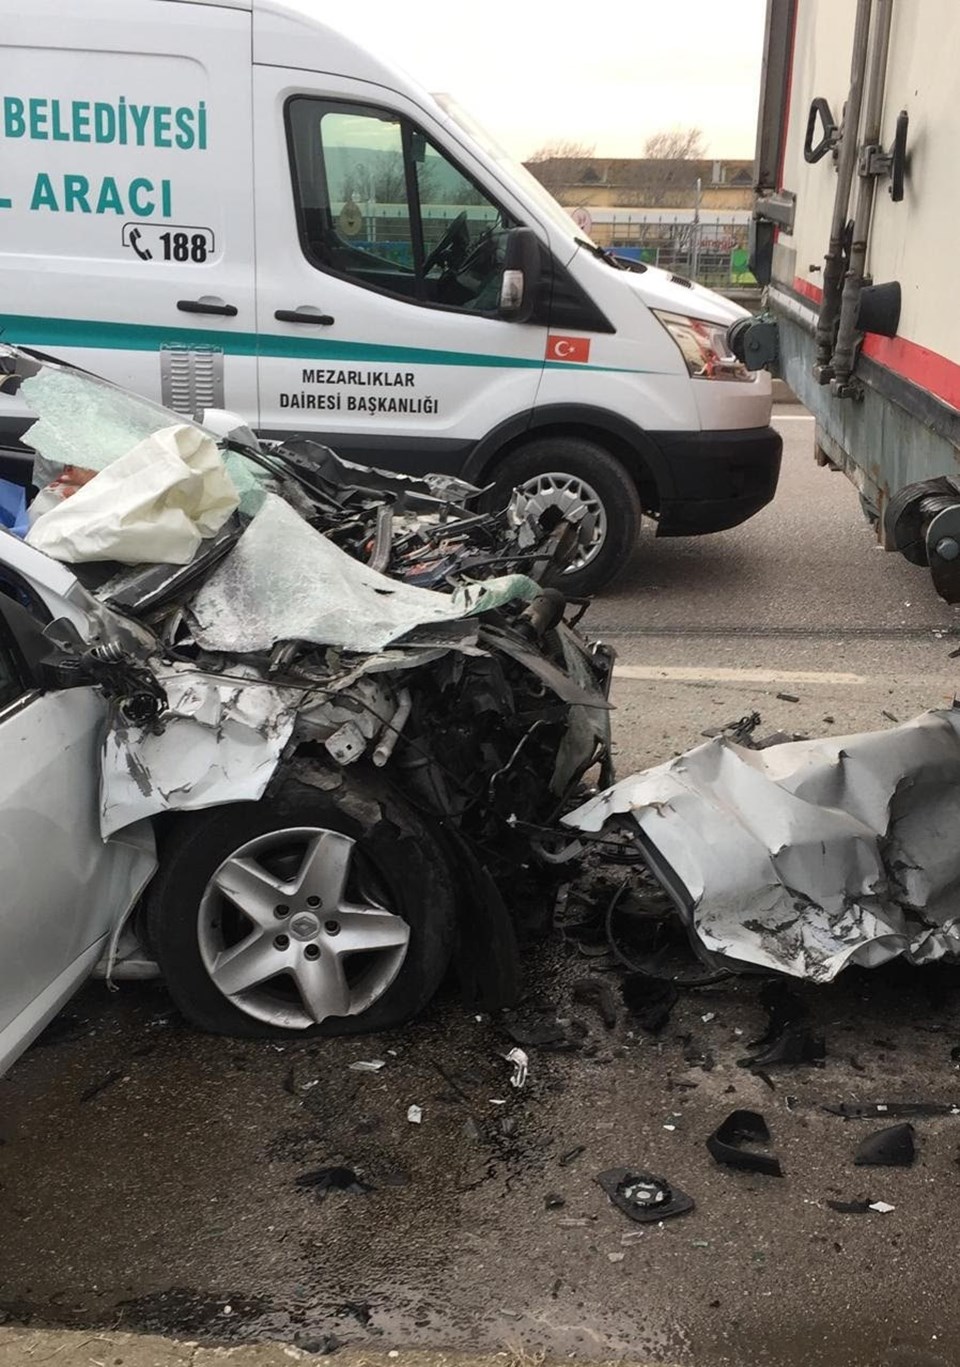 Manisa'da feci kaza: 2 ölü, 1 yaralı - 1